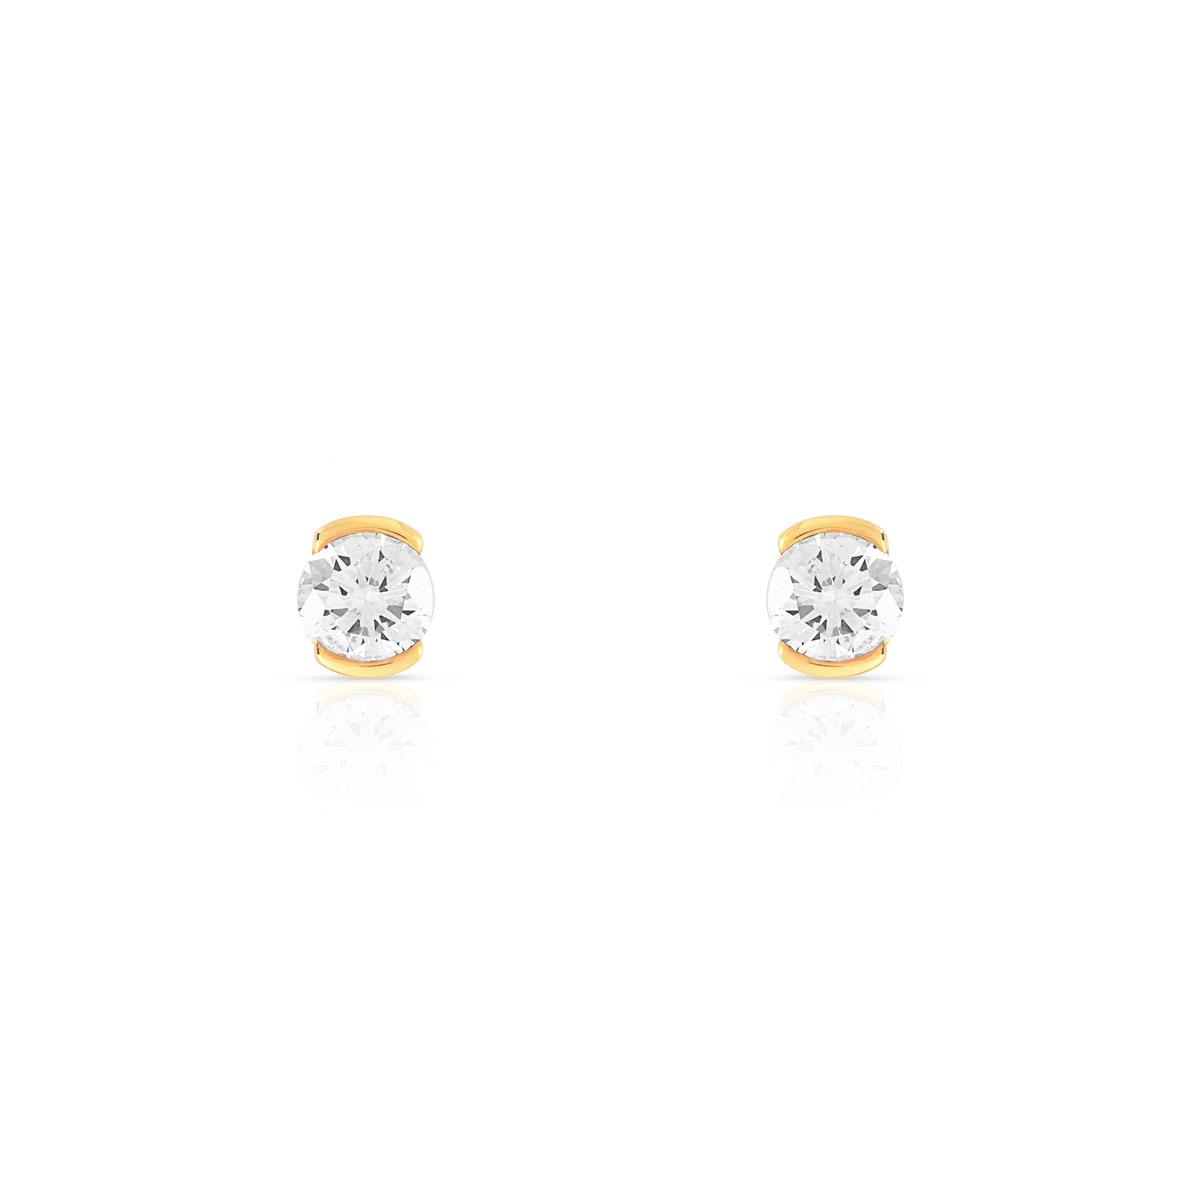 Boucles d'oreilles or jaune 750 diamant synthetique 0.50 carat